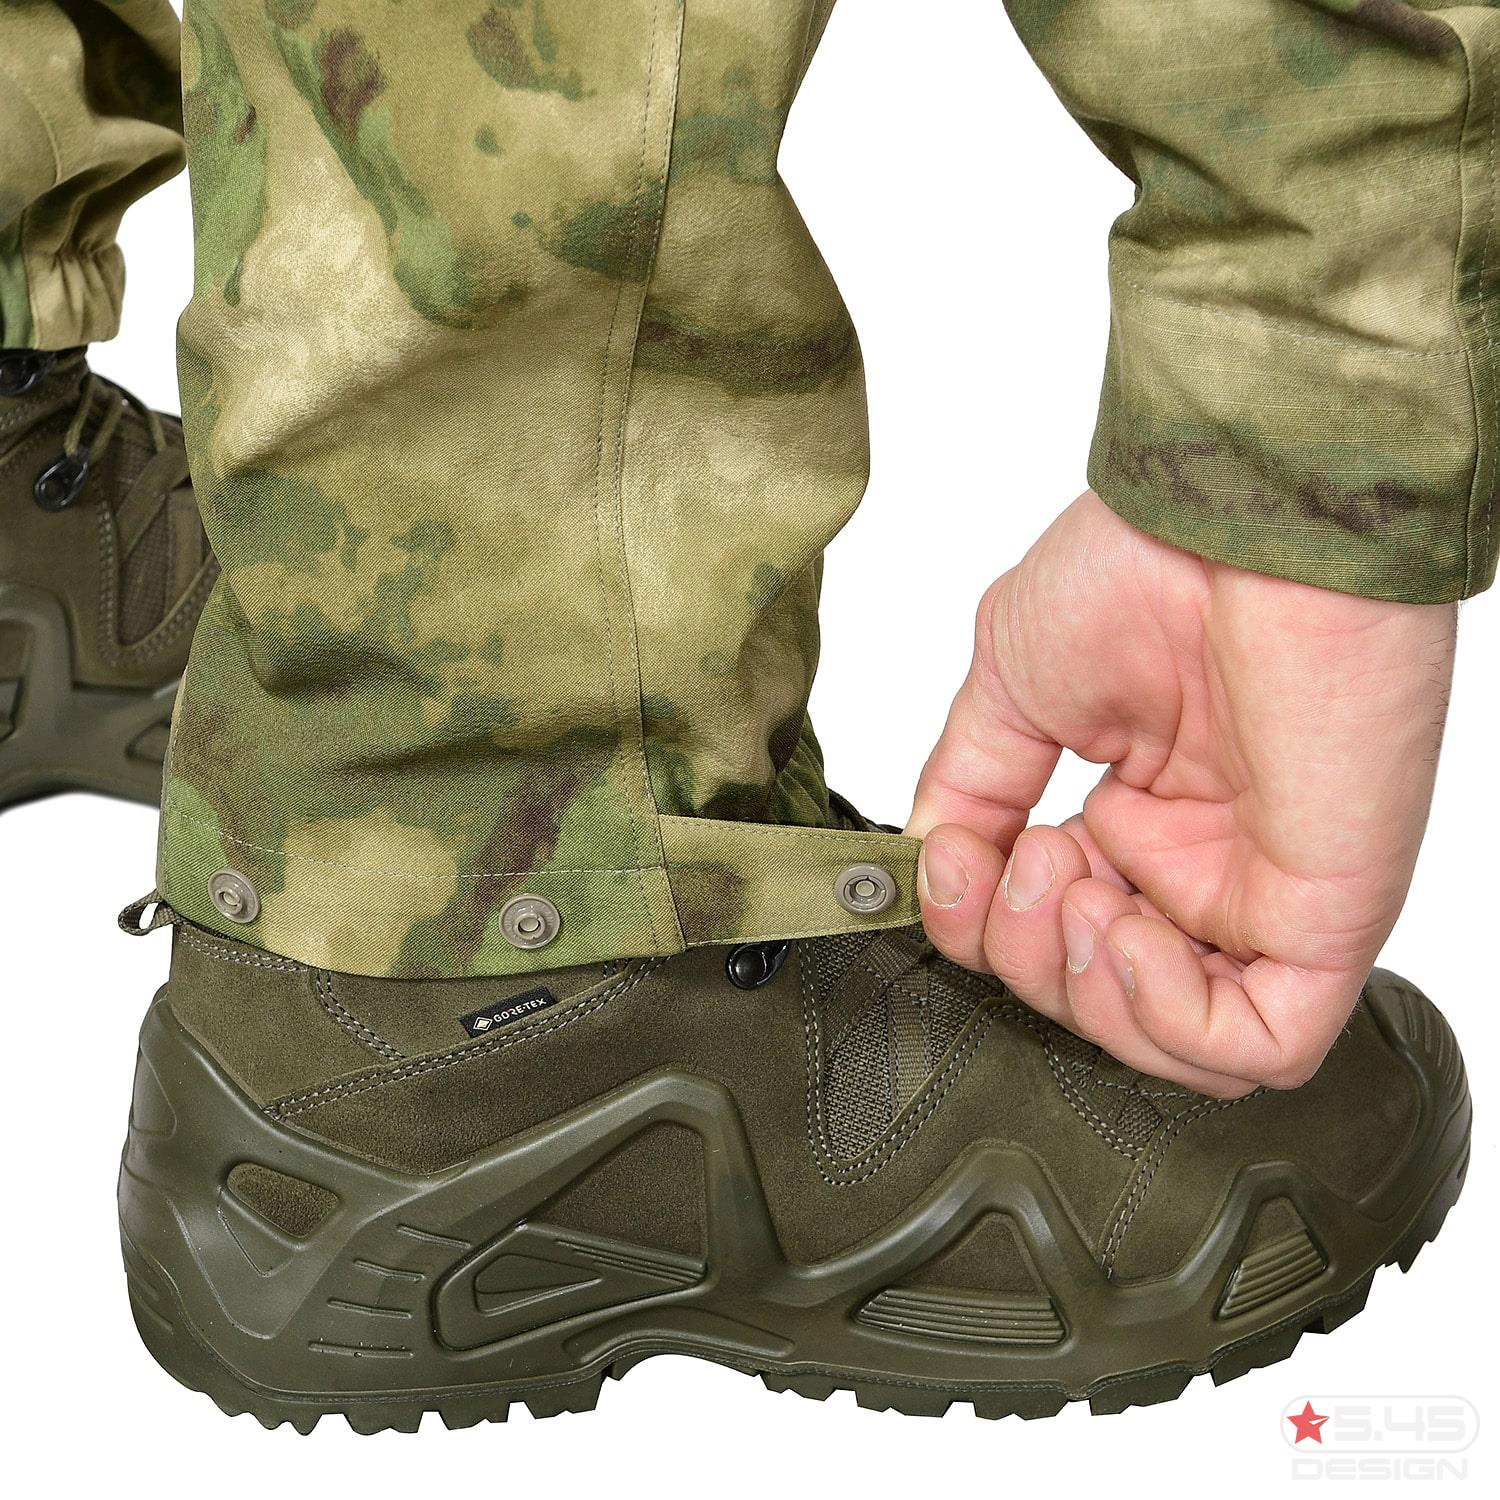 Нижнюю часть брюк можно регулировать по объёму ботинок пользователя.